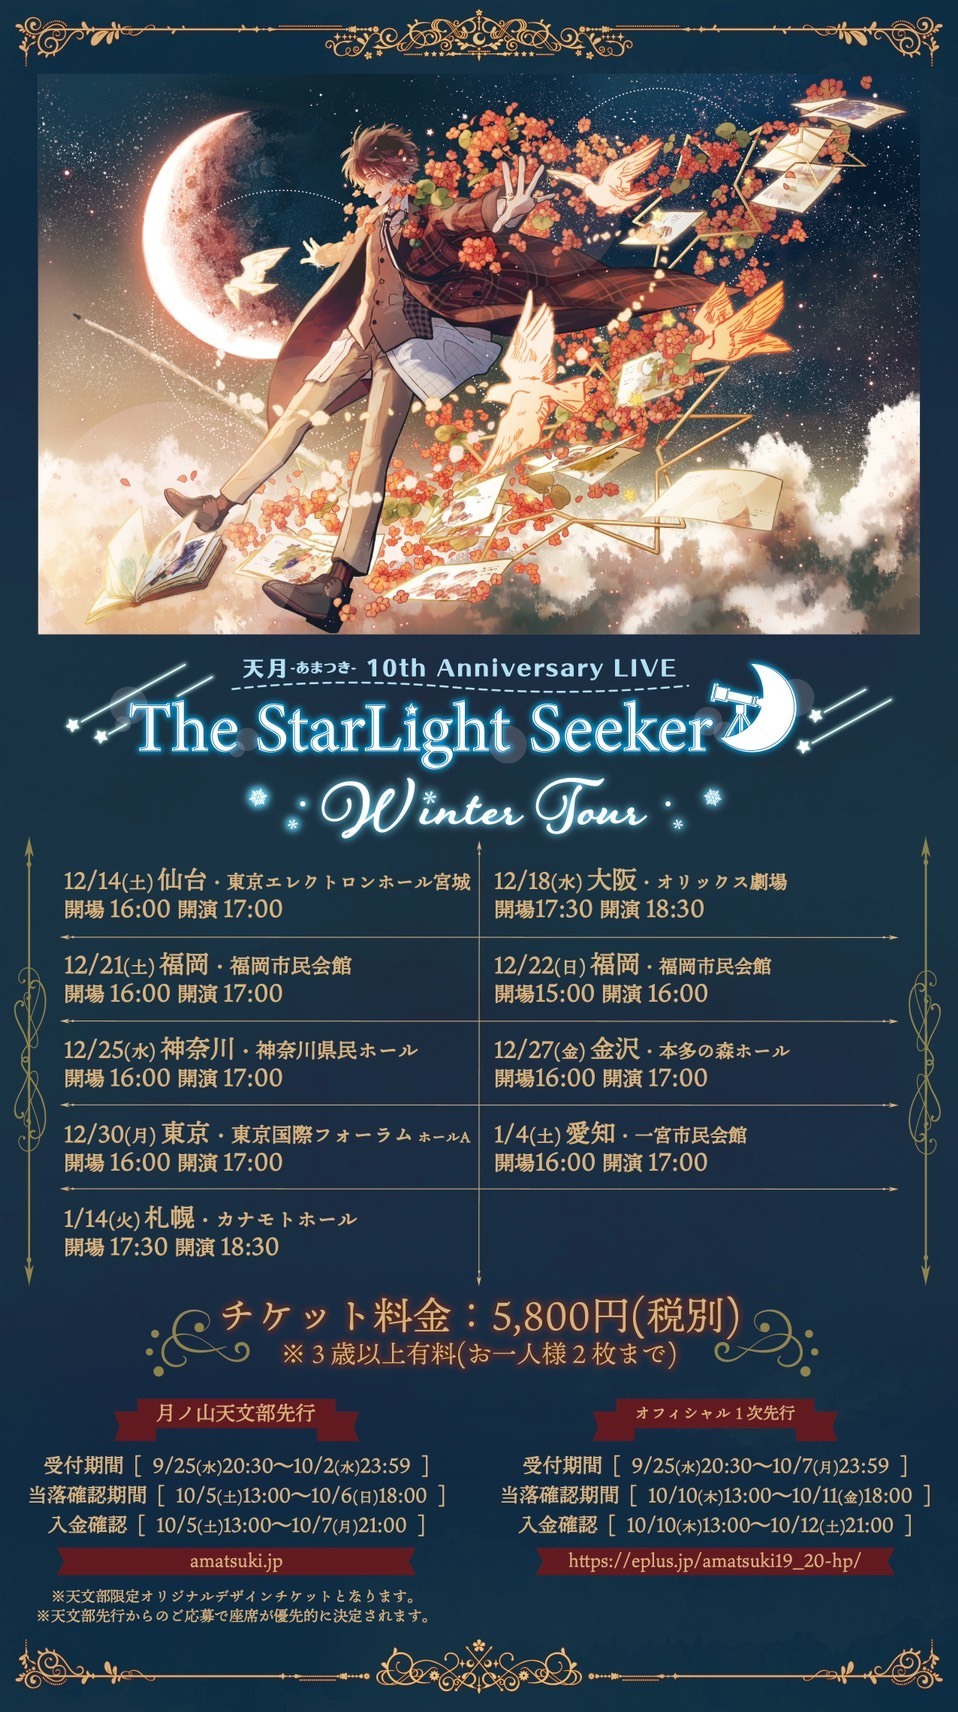 天月 あまつき 10th Anniversary Live The Starlight Seeker Winter Tour チケット先行受付開始 天月 Official Web Site